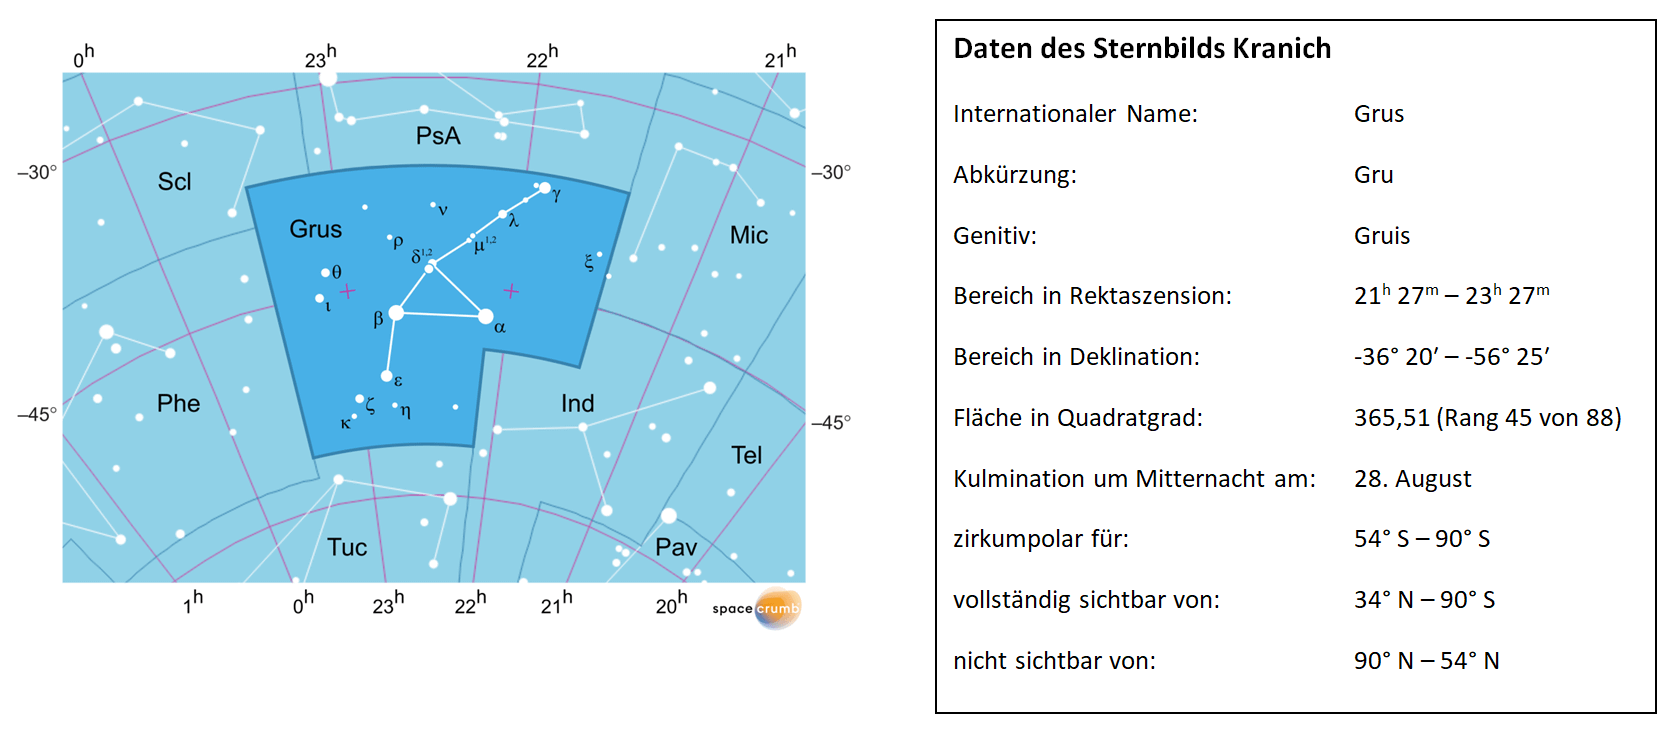 Links zeigt eine mit Koordinaten versehene Karte eines Himmelsausschnitts weiße Sterne auf hellblauem Hintergrund. Die Fläche, die das Sternbild Kranich einnimmt, ist dunkelblau hervorgehoben. Eine Tabelle rechts gibt wichtige Daten des Sternbilds Kranich an.